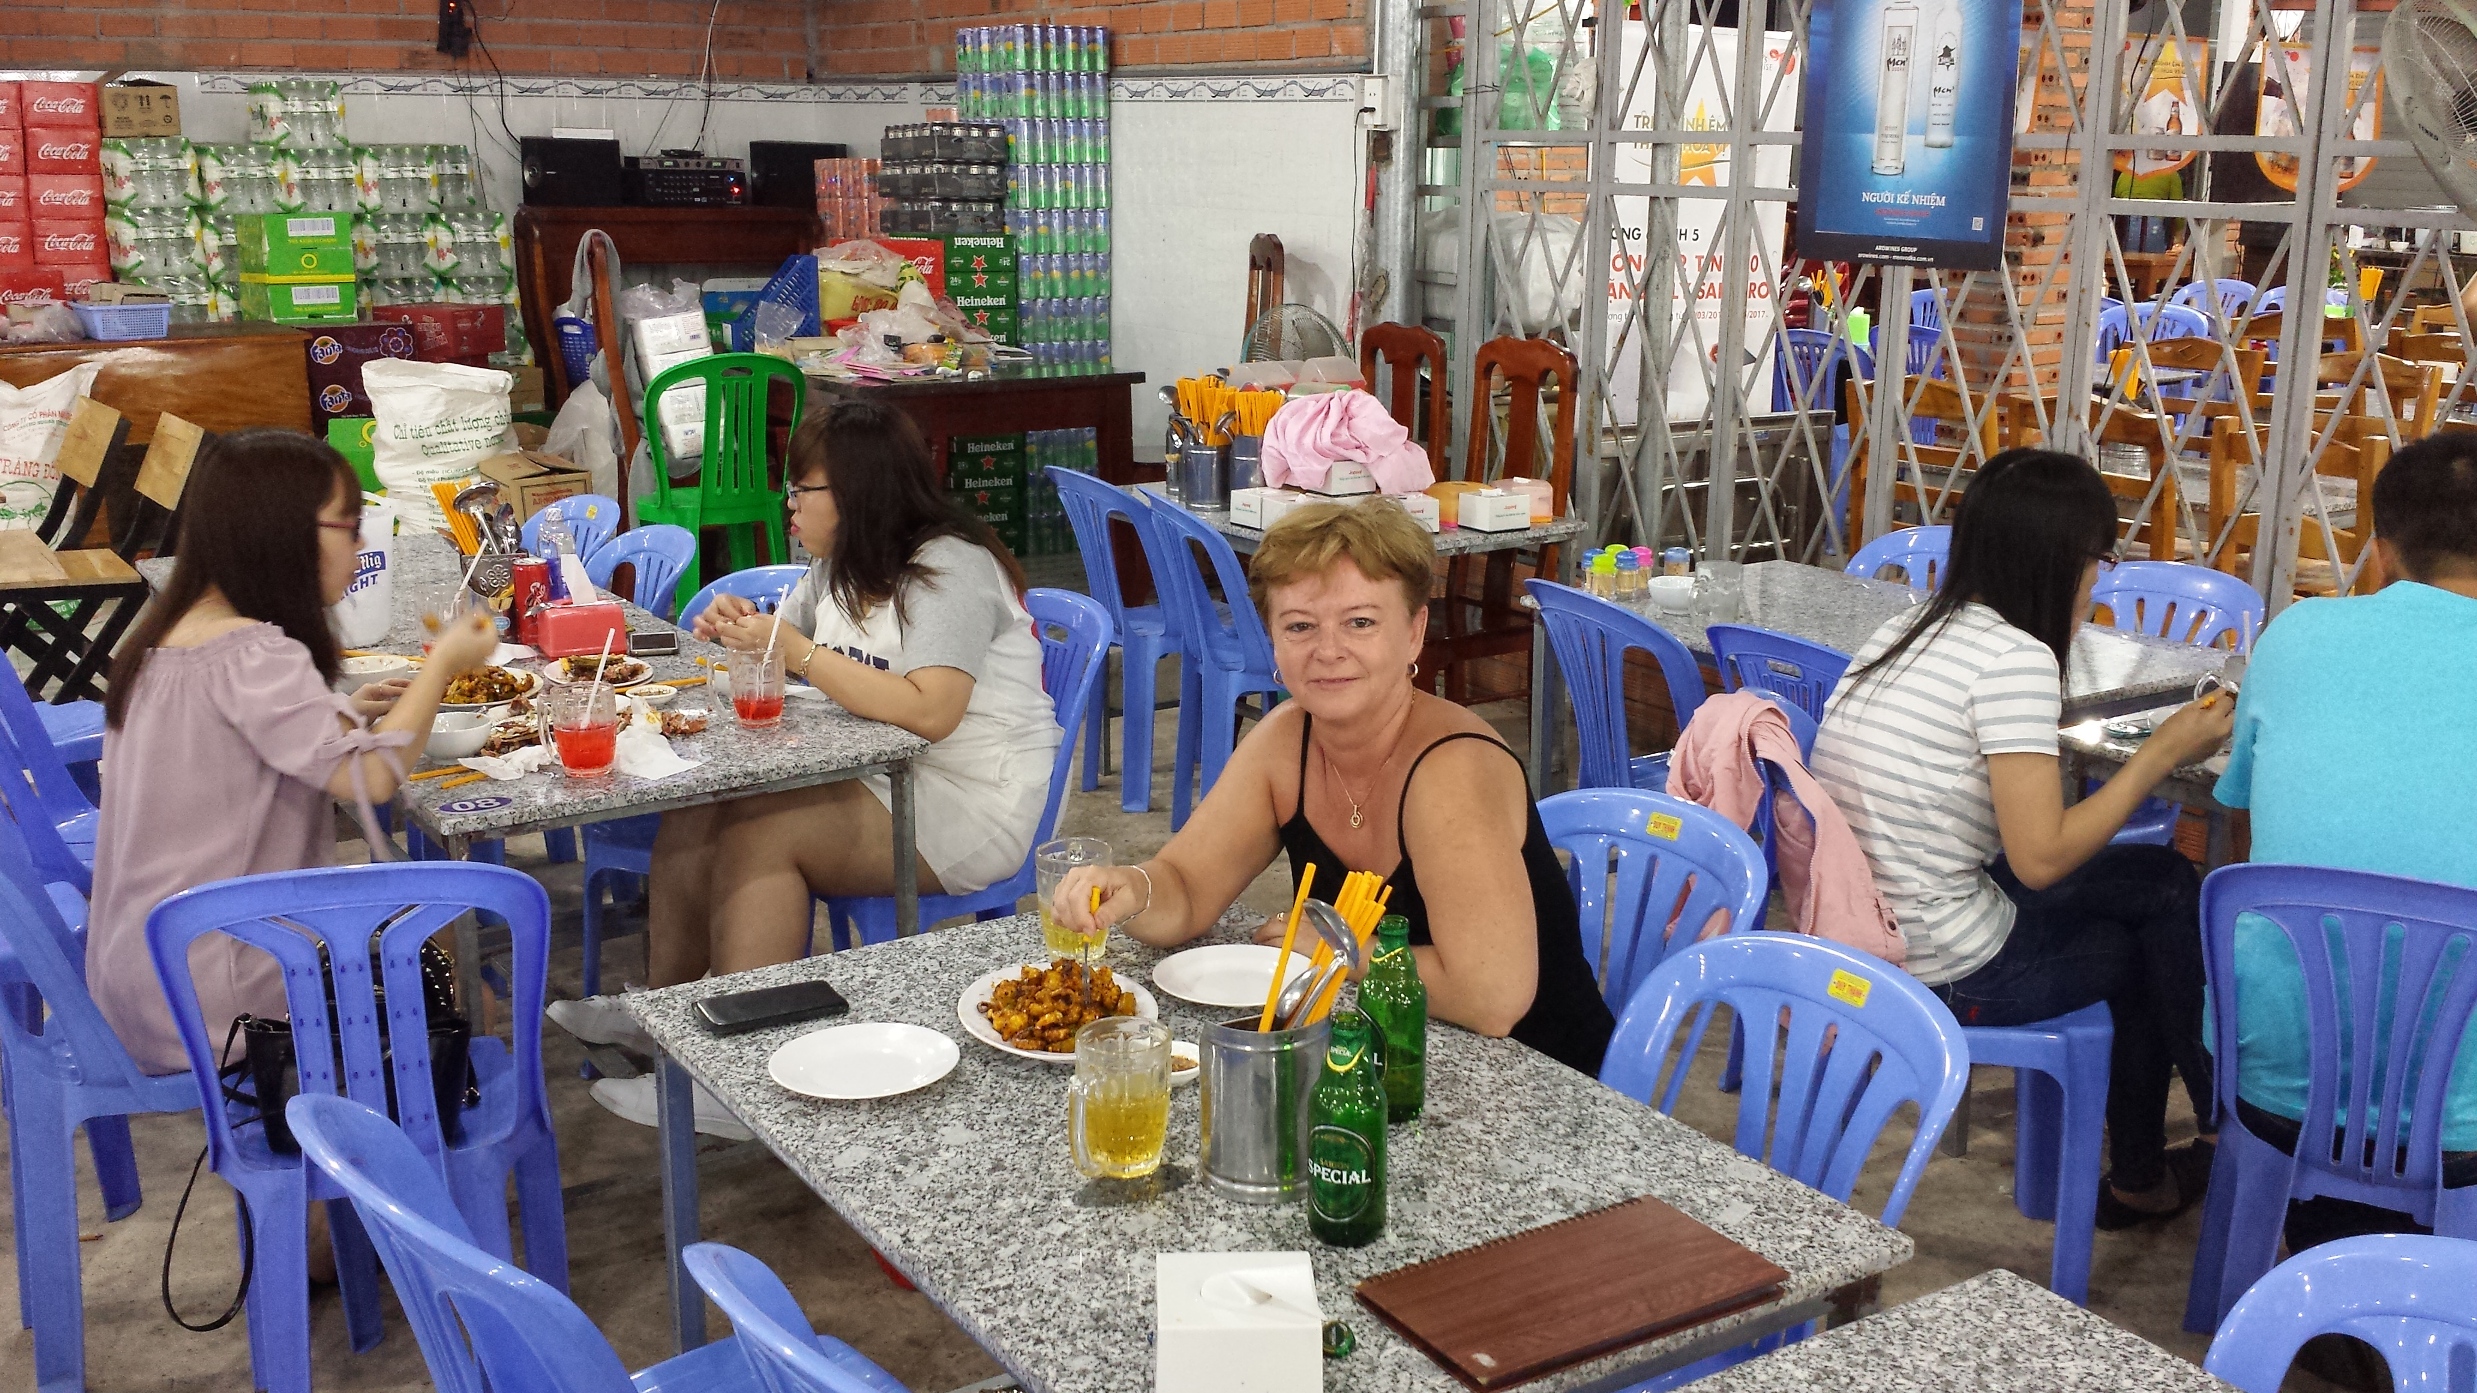 Kedvenc étkezdénk Vung Tauban. Itt mindig friss az étel, kedves és gyors a kiszolgálás.